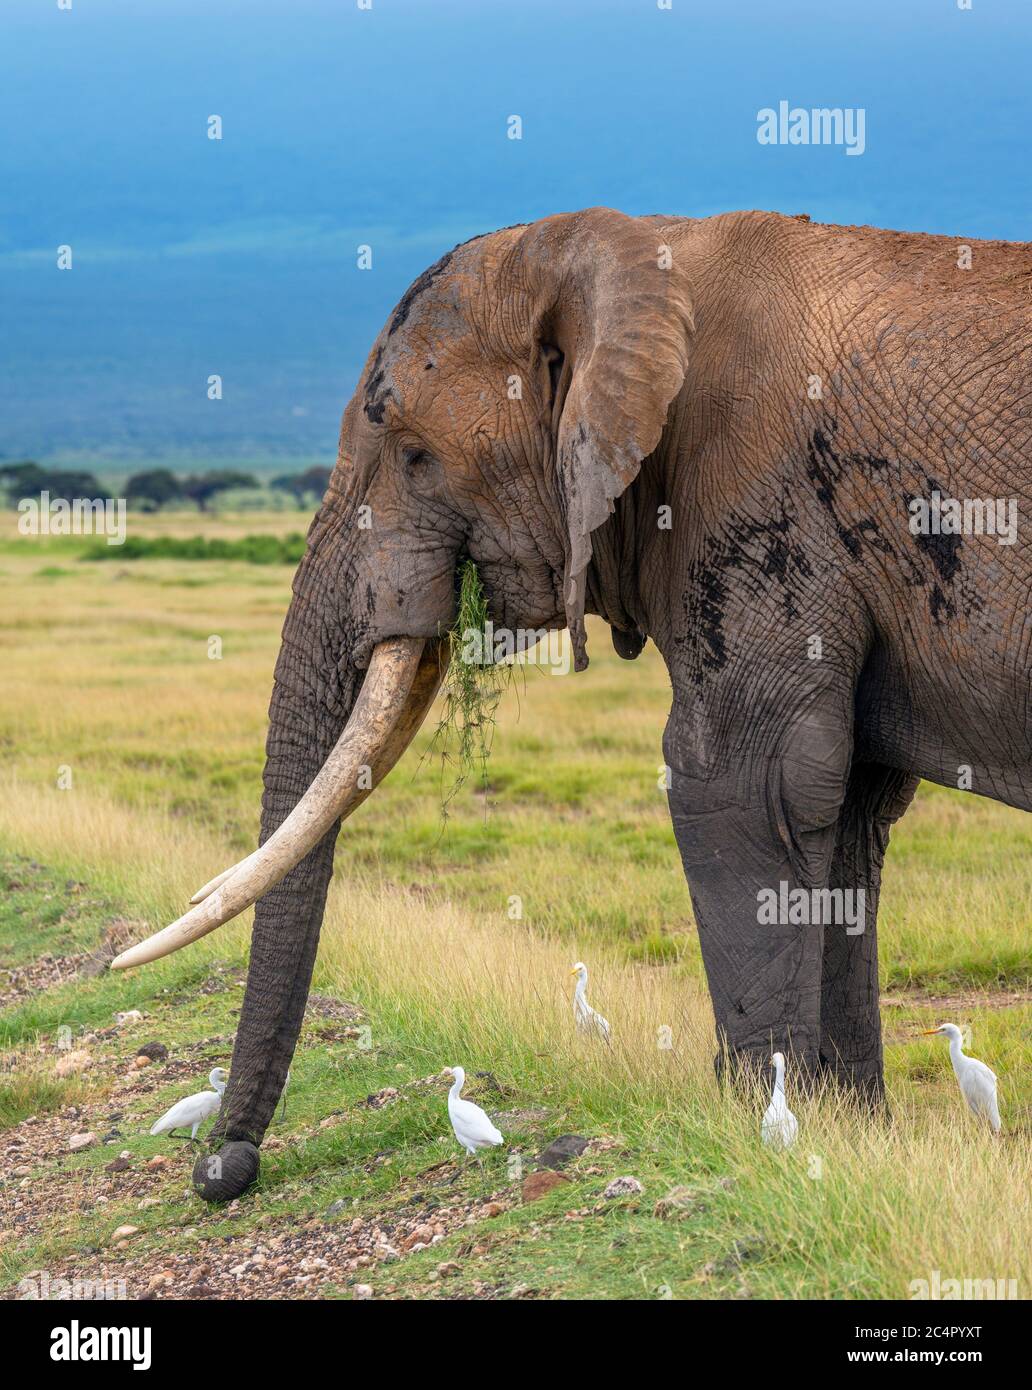 Éléphant de brousse africain (Loxodonta africana) en pâturage tout en étant entouré par les aigrettes, parc national d'Amboseli, Kenya, Afrique Banque D'Images